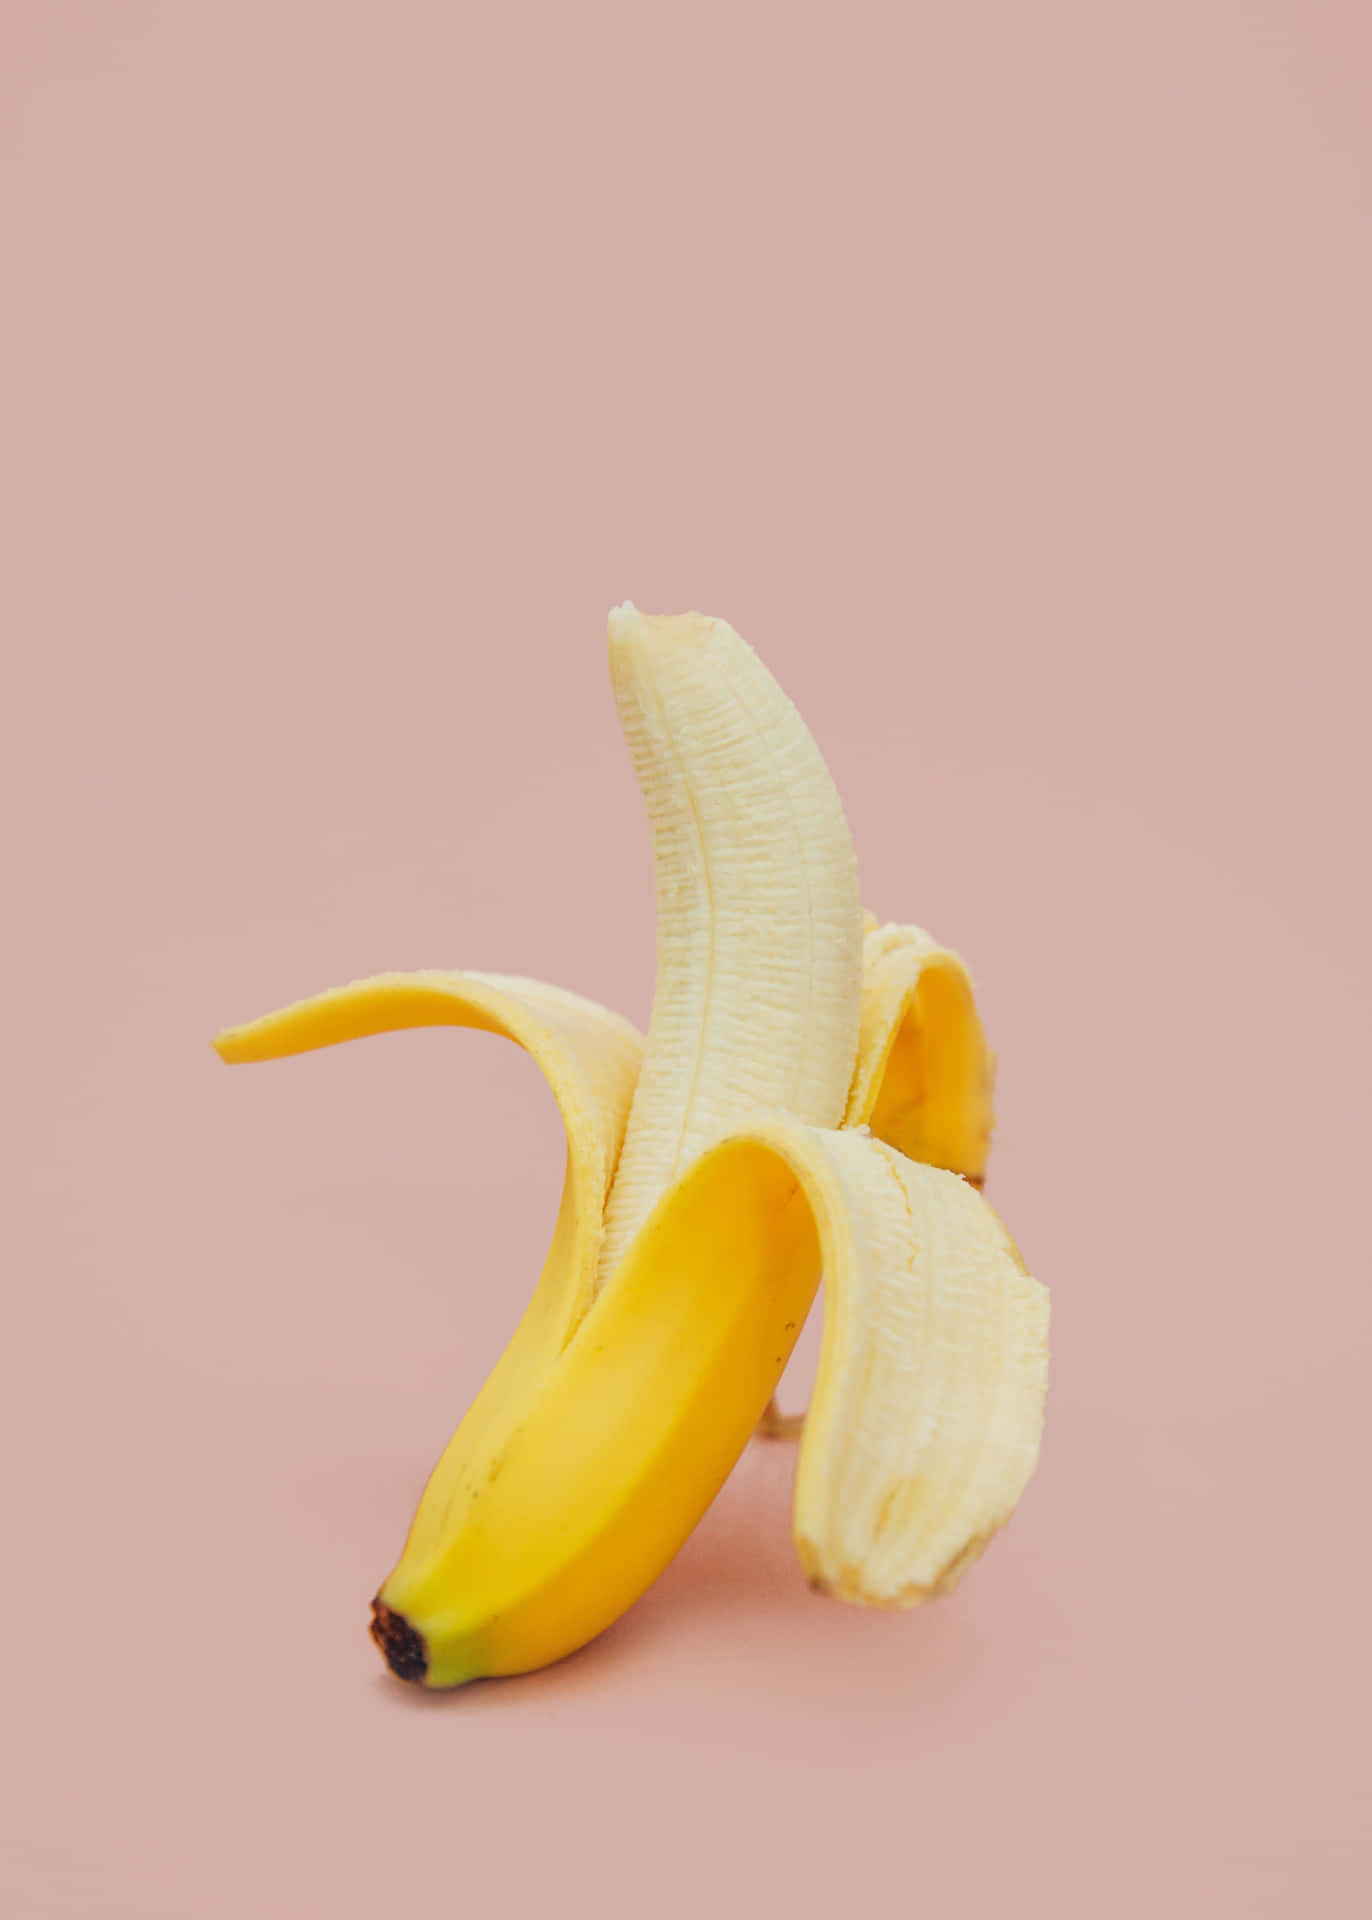 Unadeliziosa Banana Gialla Su Un Piatto Bianco.